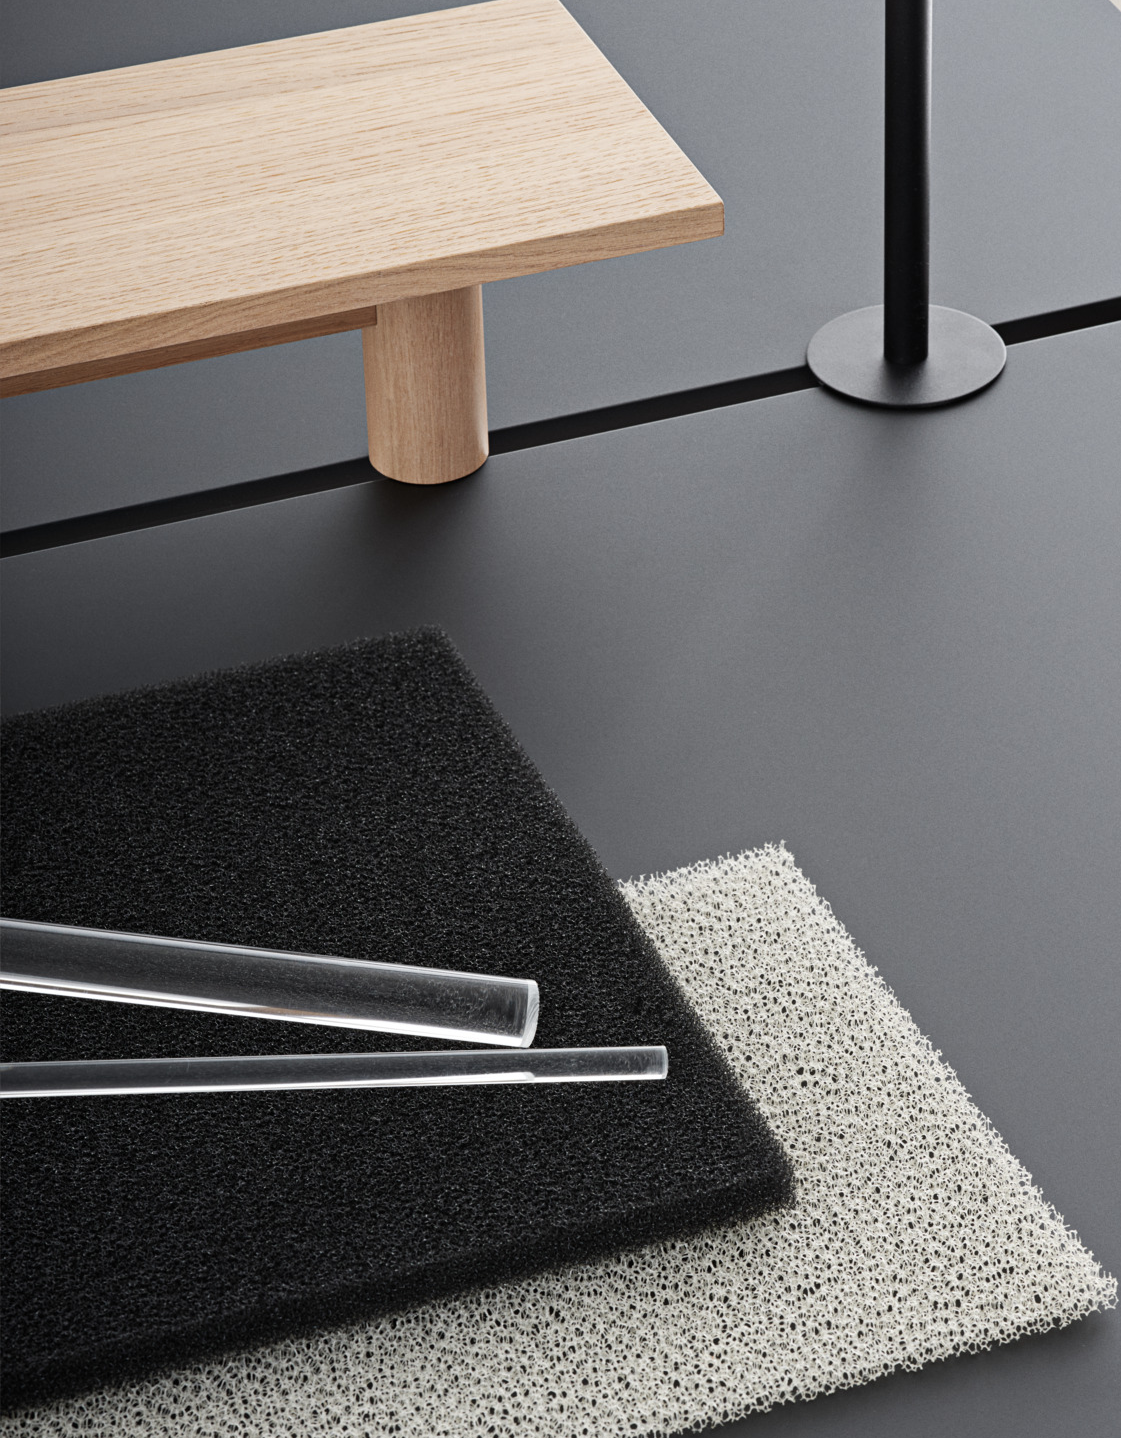 Linear System Tisch in Schwarz / Eiche präsentiert im Onlineshop von KAQTU Design AG. Schreibtisch ist von Muuto